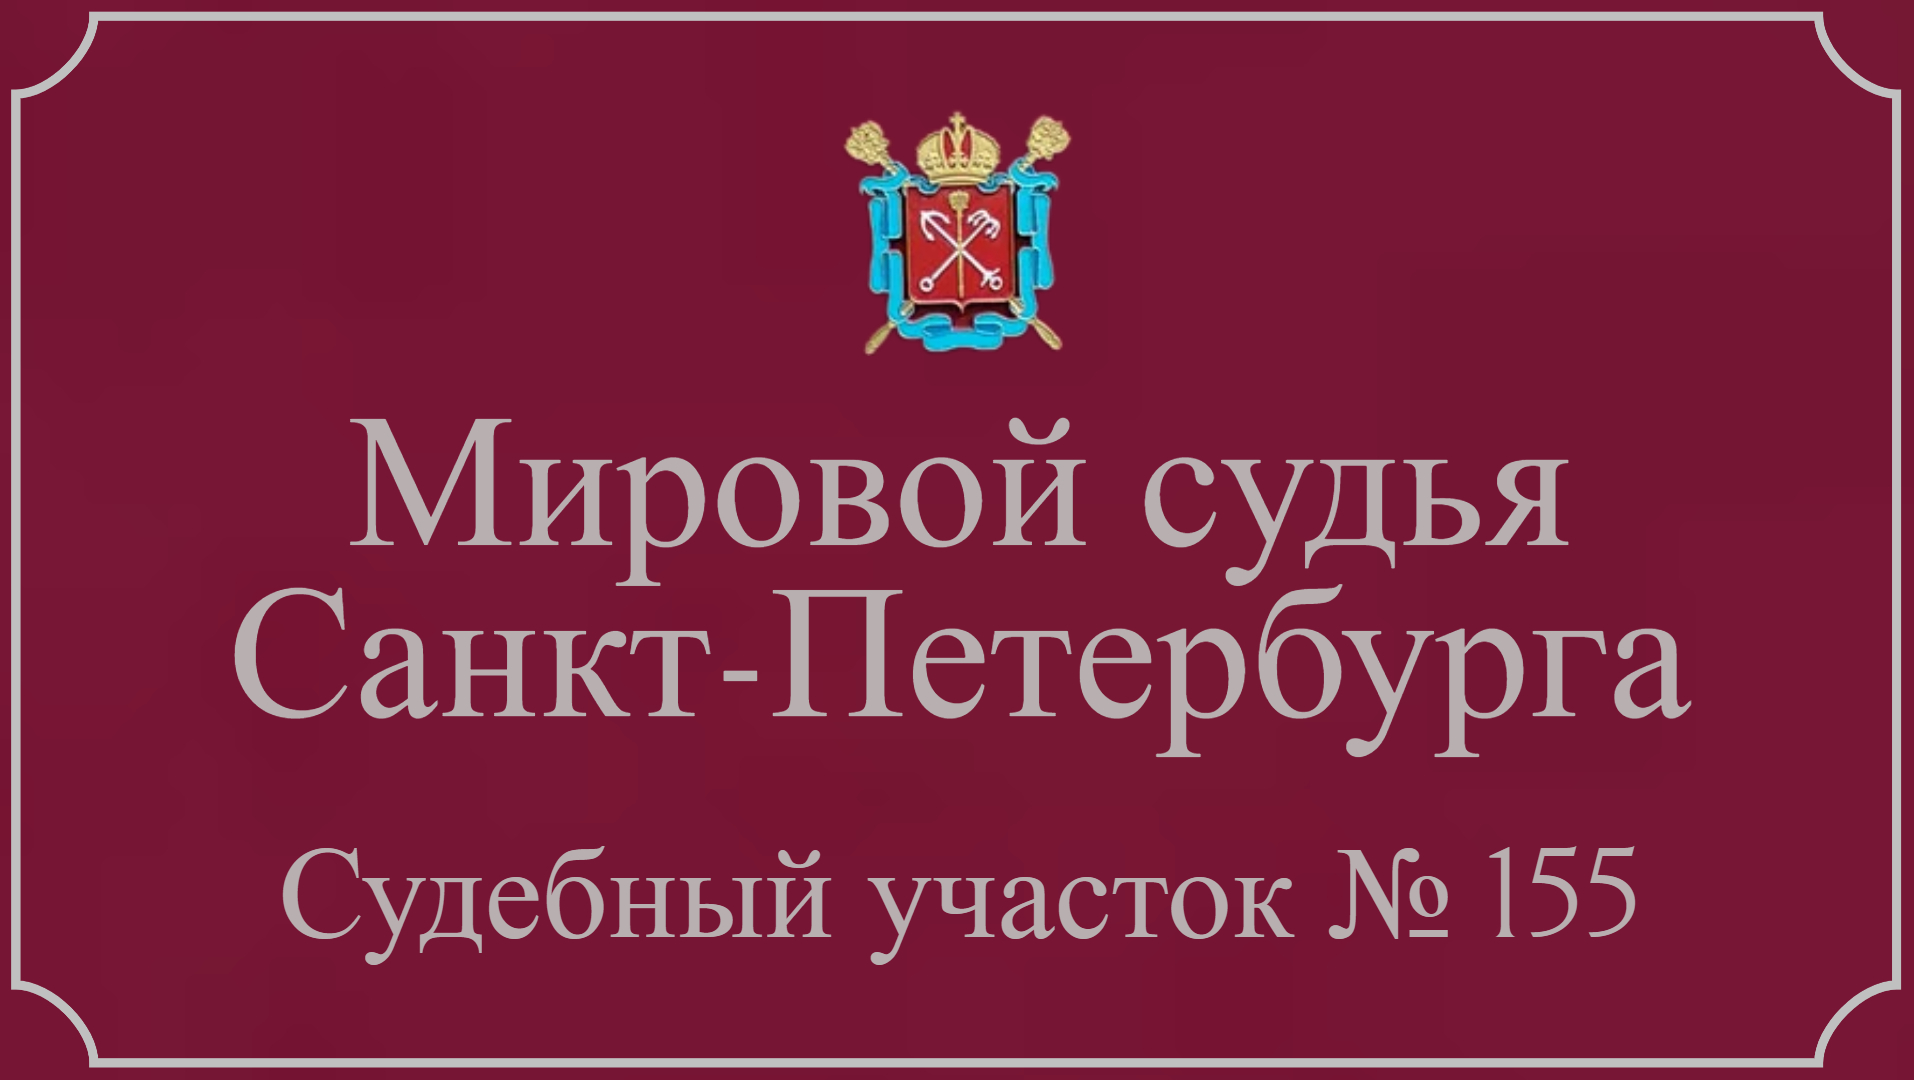 Информация по 155 судебному участку в Санкт-Петербурге.